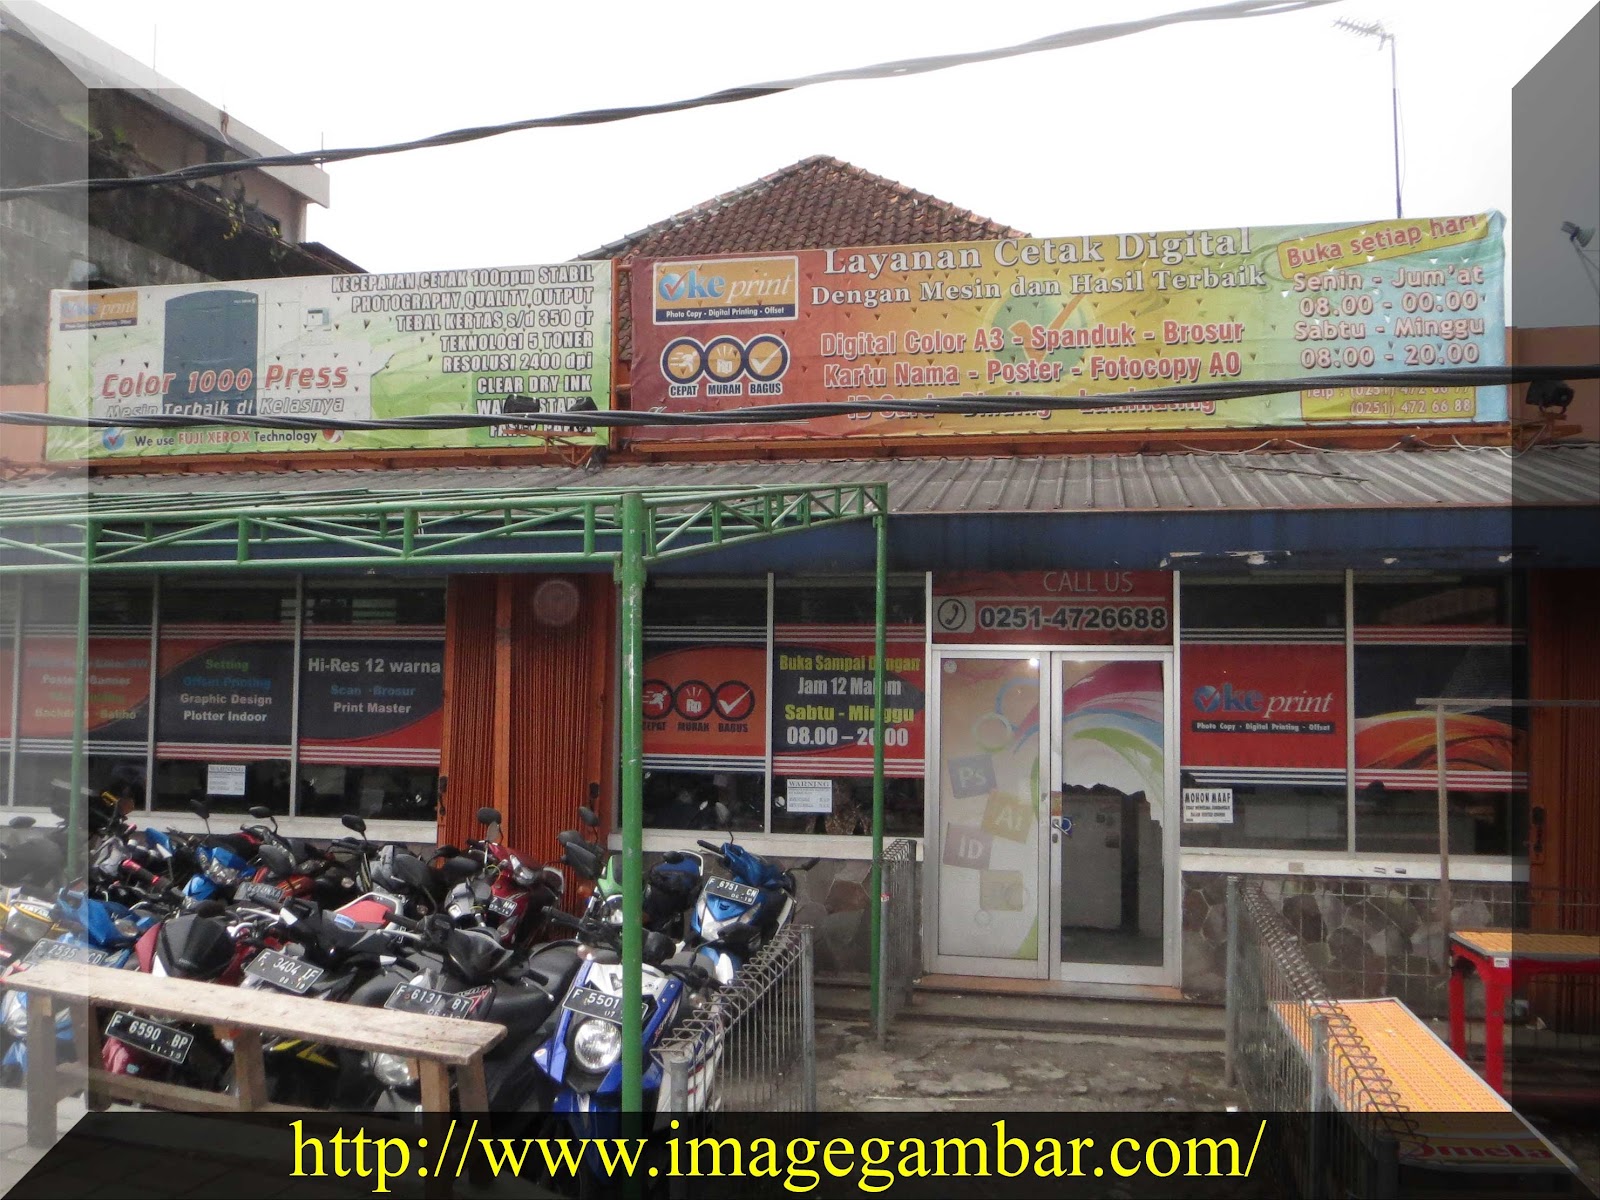 Image Gambar Untuk Semua: Oke Print Percetakan Warna di Bogor